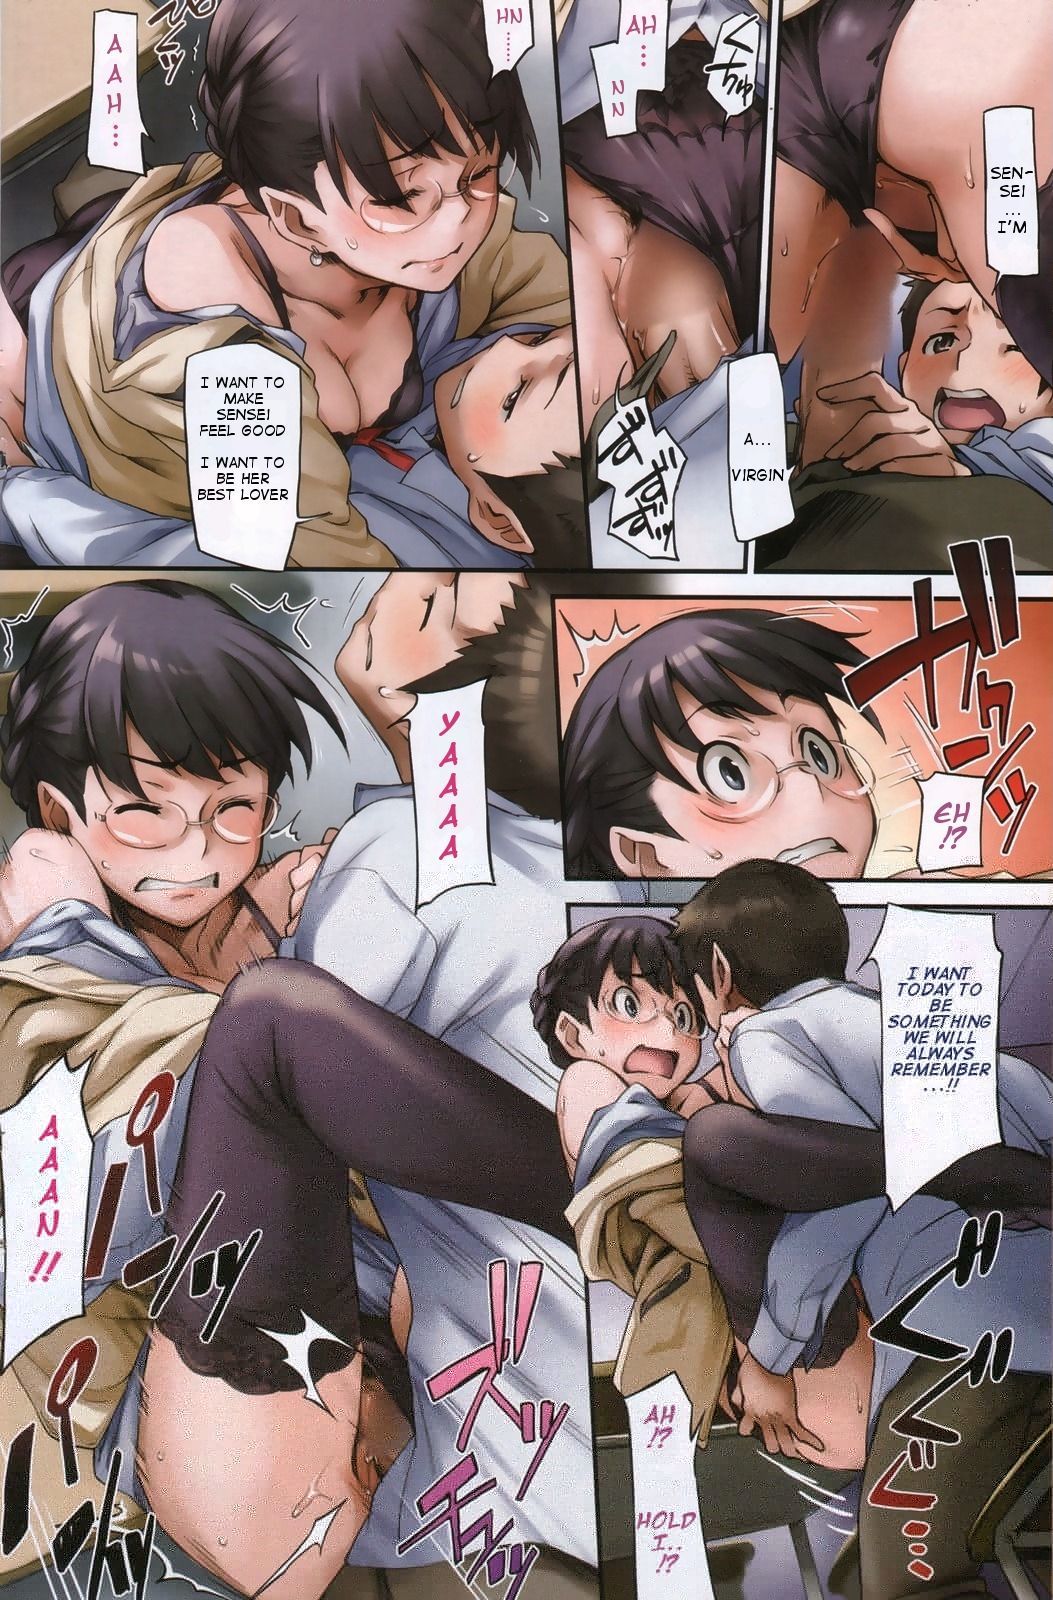 hentai manga bis Wir treffen wieder page 1